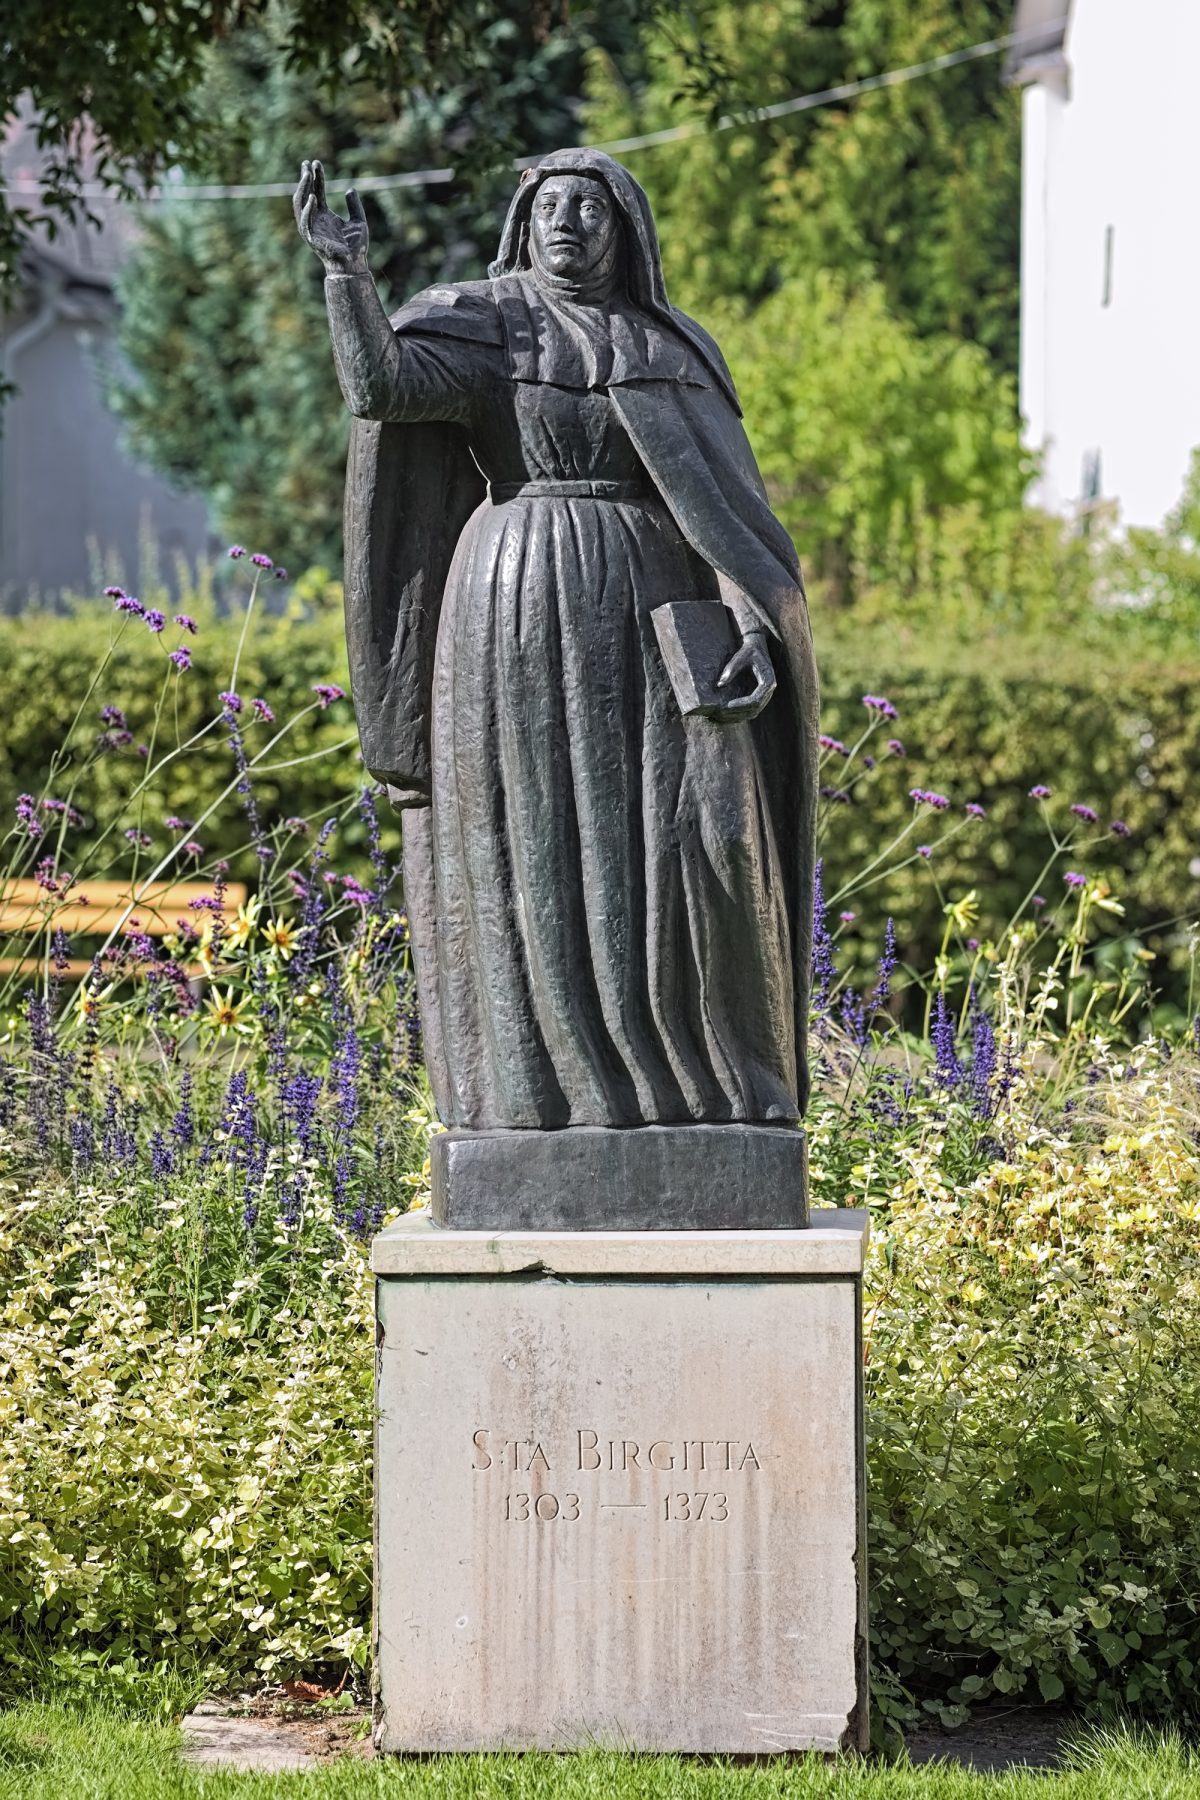 I Vadstena får vi se denne statuen av Sankta Birgitta (1303 - 1373)